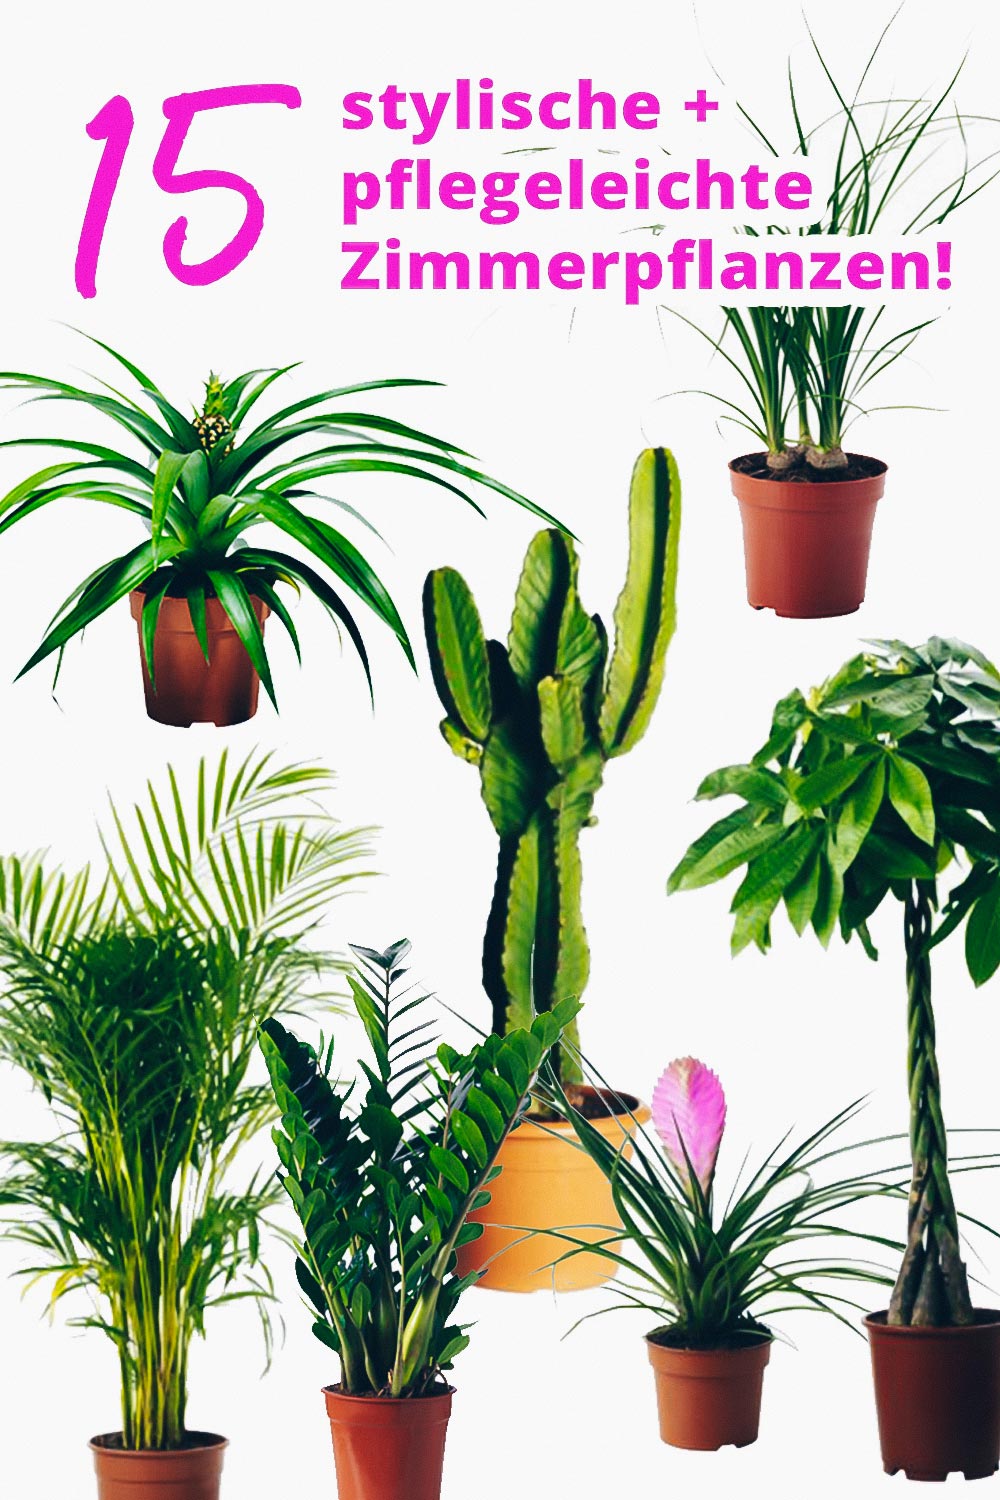 Der Pflanzen-Guide! 15 stylische und pflegeleichte ...